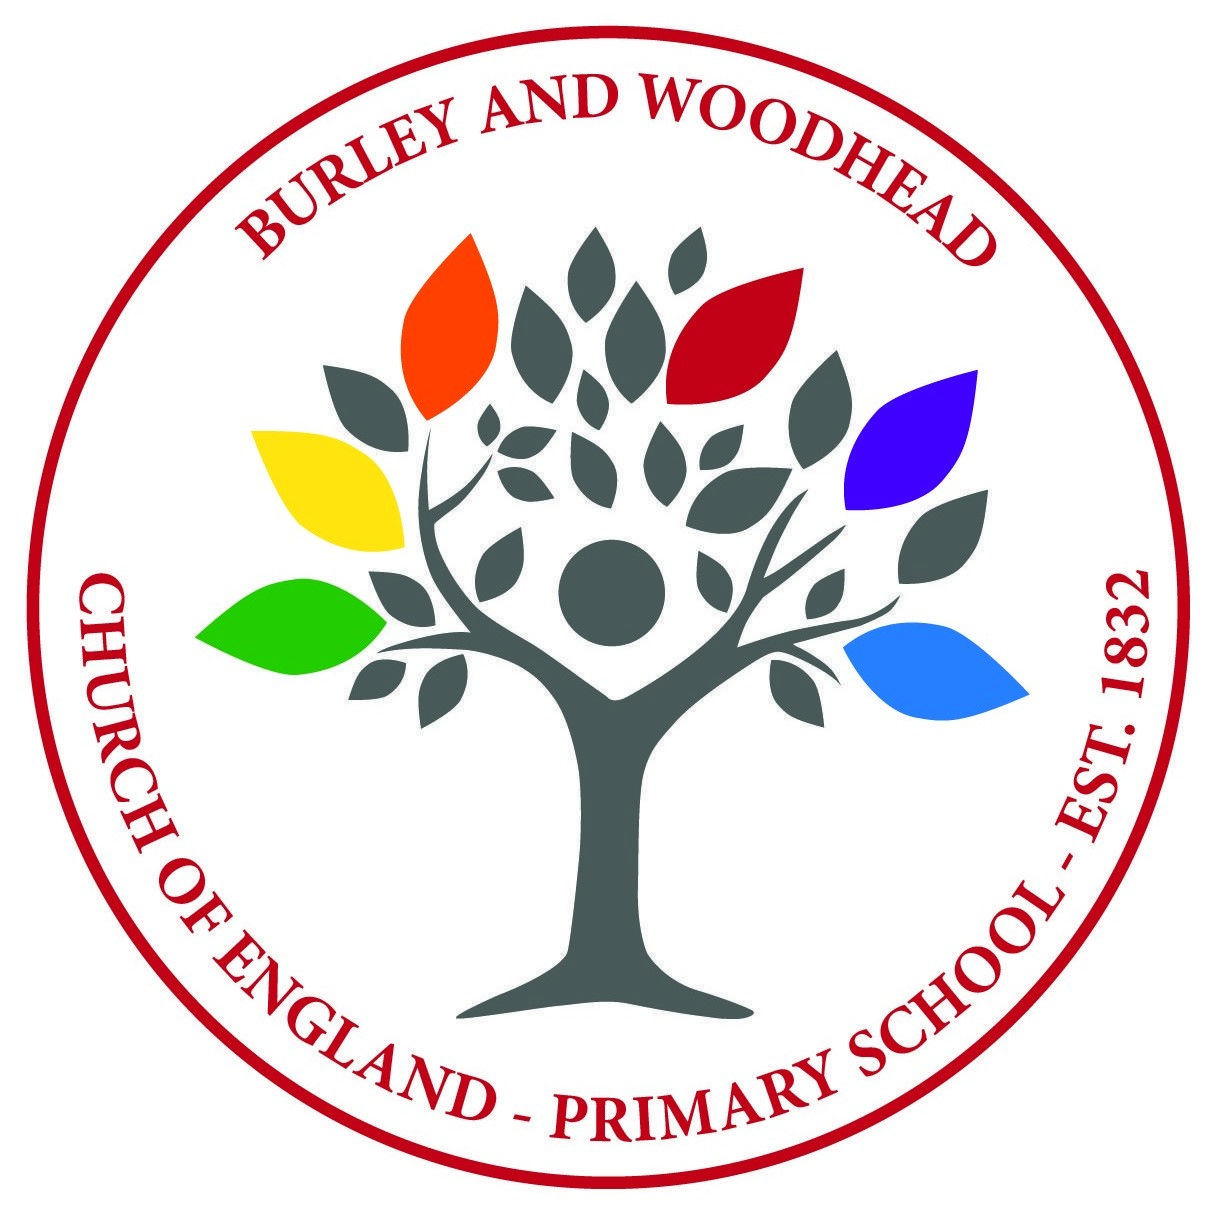 Woodhead Logo - Burley & Woodhead CE Primary School, Ilkley - School Finder ...